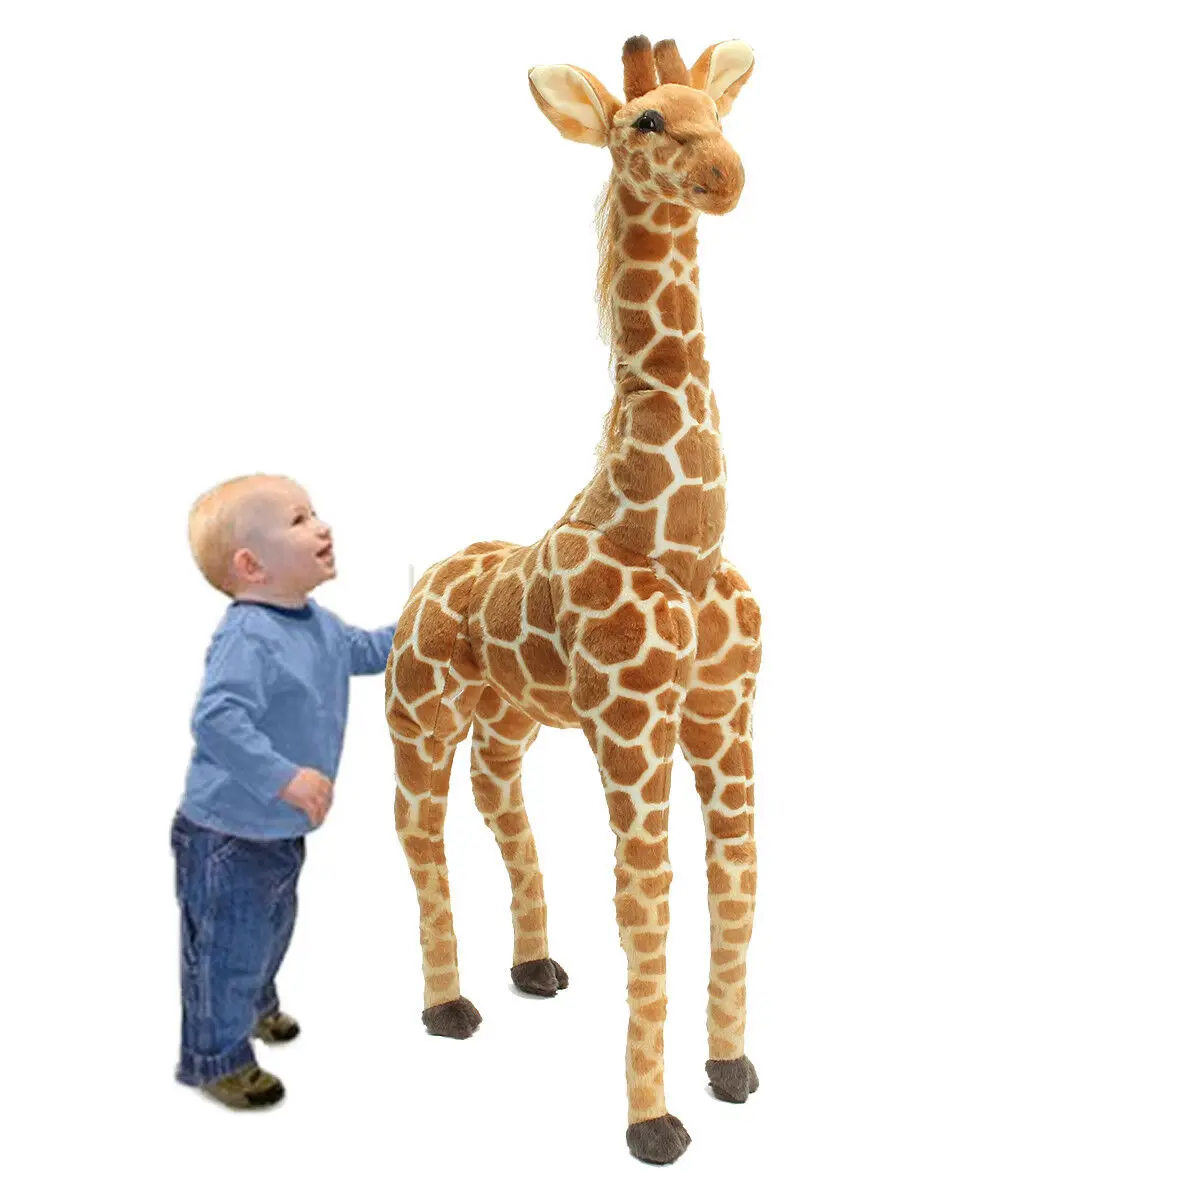 США 40 ''большая плюшевая игрушка жирафа кукла гигантская большая плюшевая игрушка мягкая кукла подарок для детей